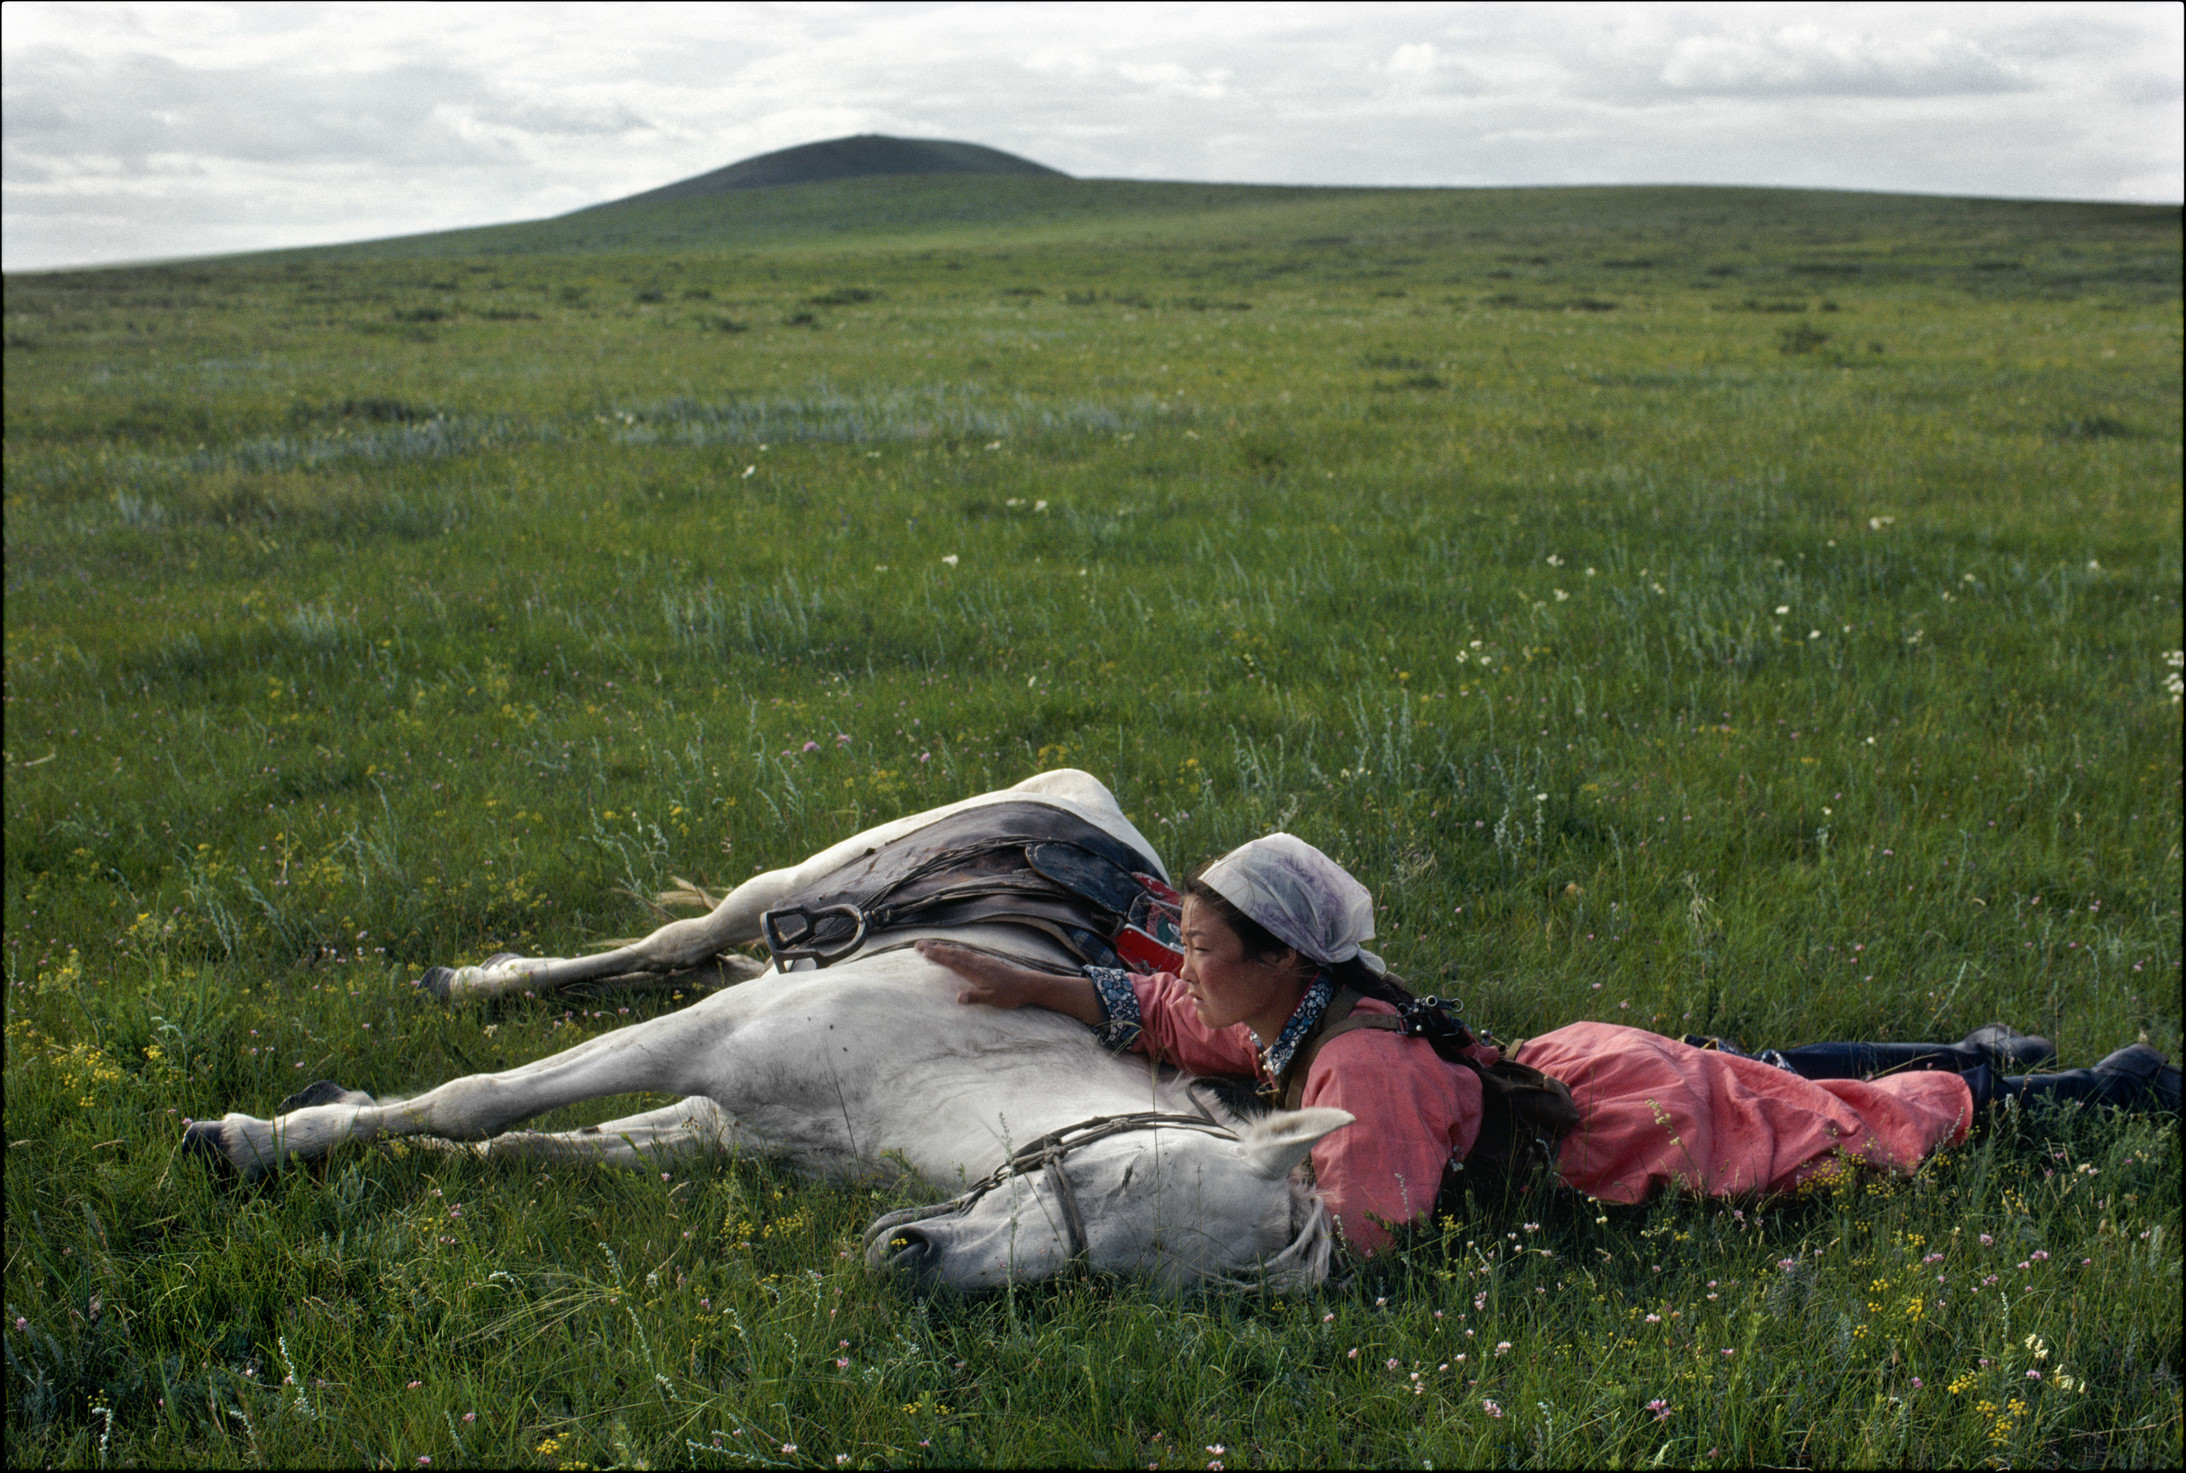 Pferdetraining für die Miliz, Innere Mongolei, 1979. Photo: Eve Arnold. © Eve Arnold / Magnum Photos / courtesy Schirmer/Mosel 